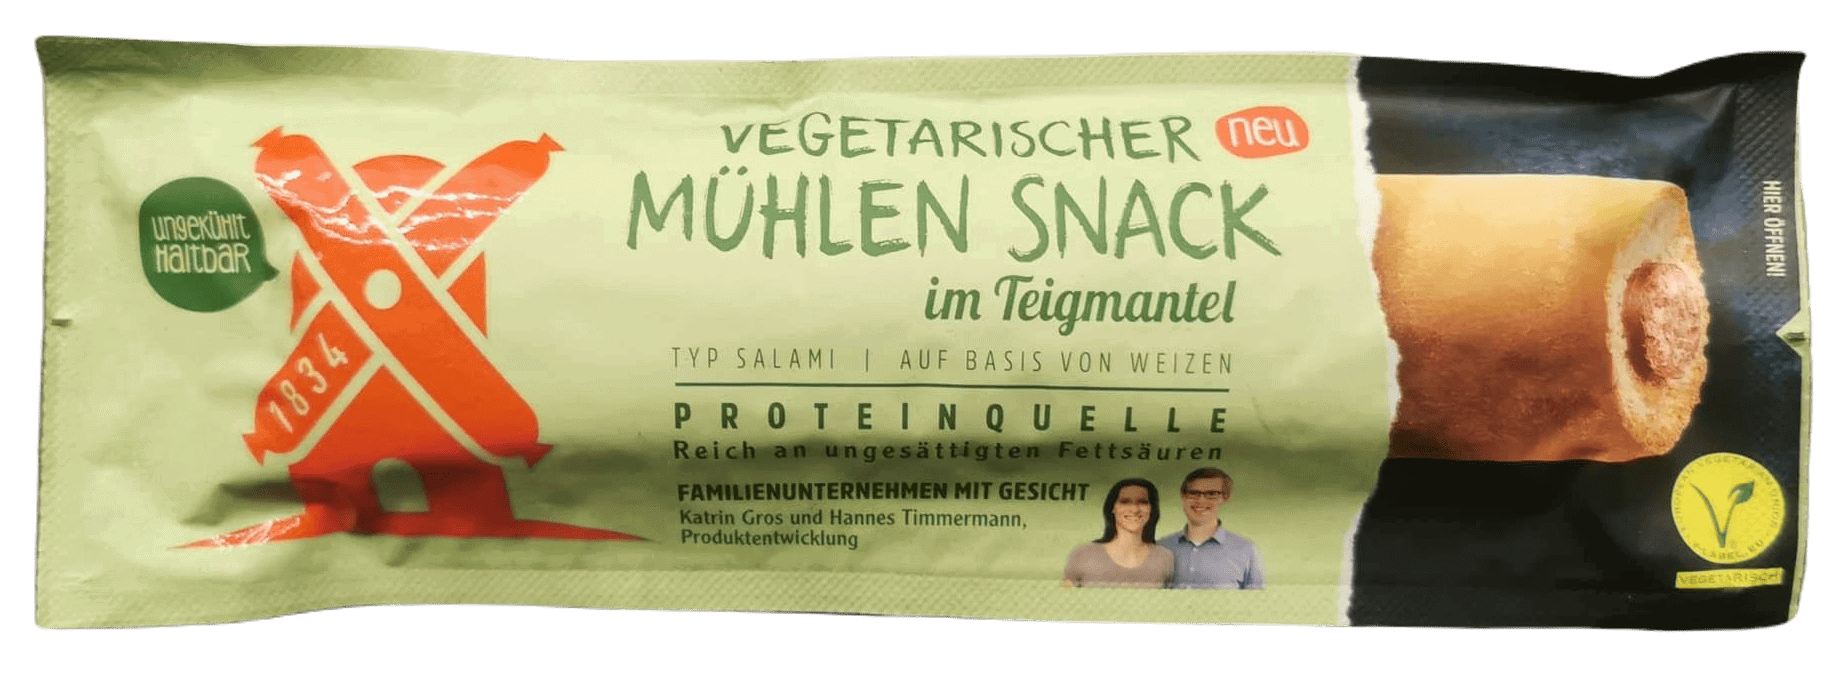 Rügenwalder Mühle: Vegetarischer Mühlen Snack Teigmantel Salami